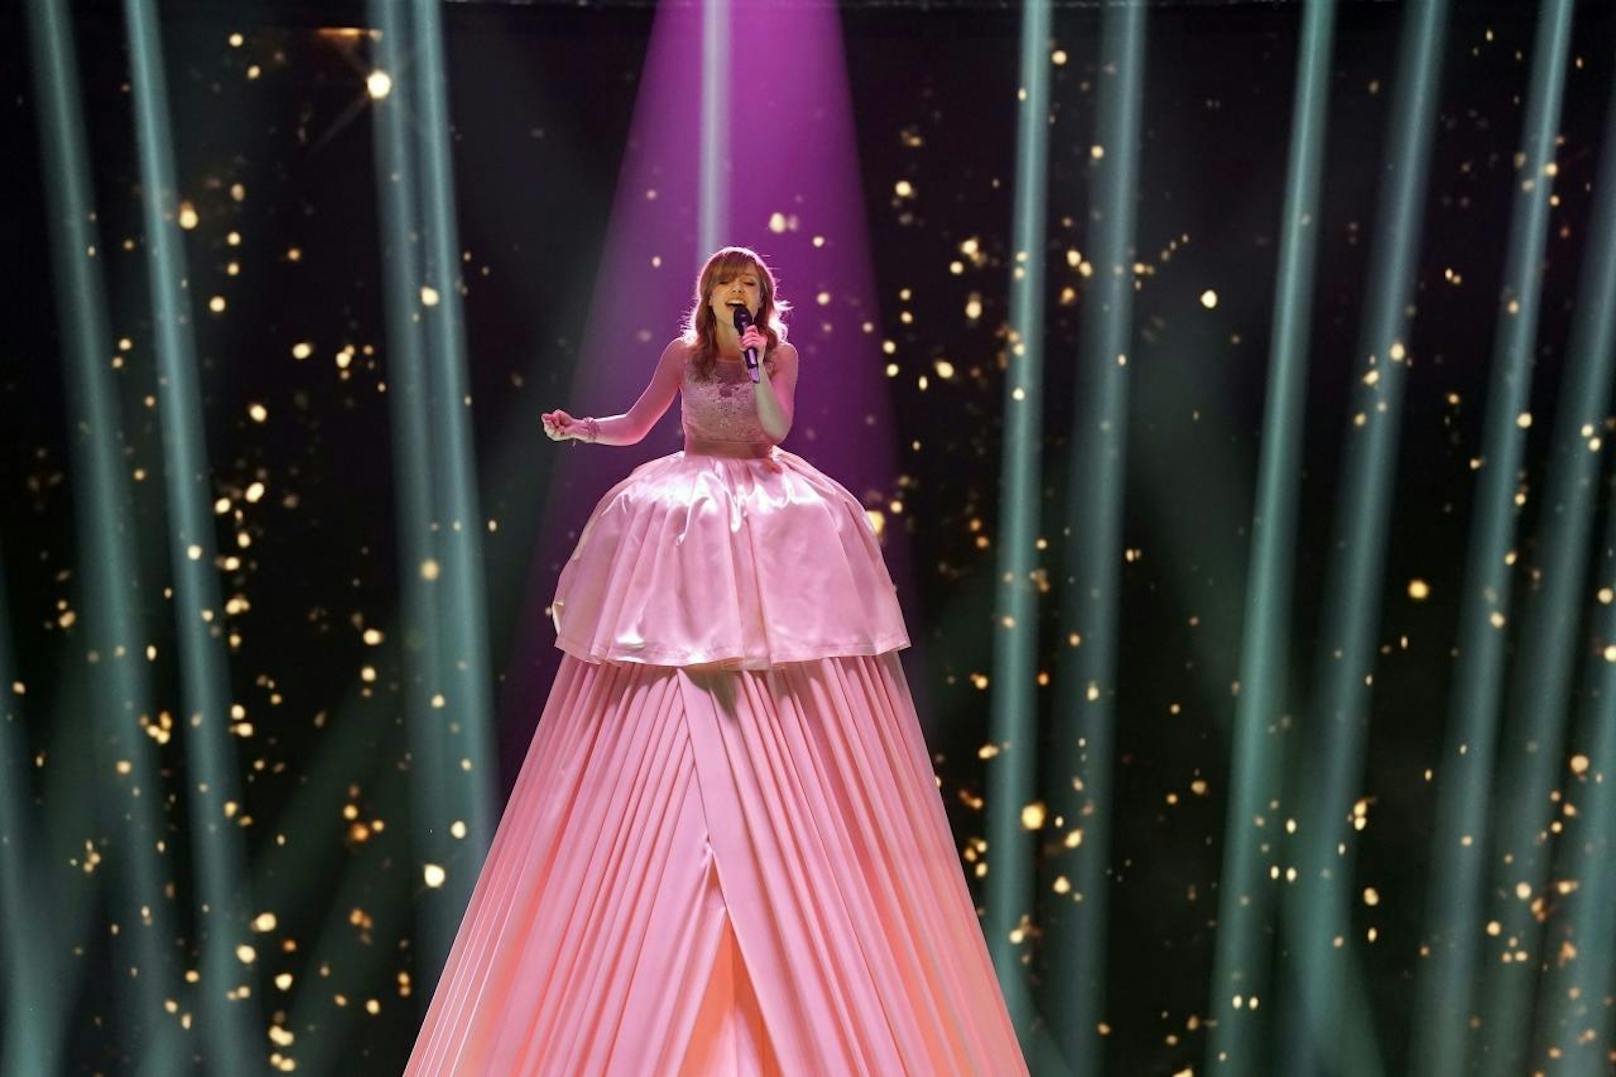 Für diesen Auftritt trug sie ein gigantisches, rosafarbenes Kleid